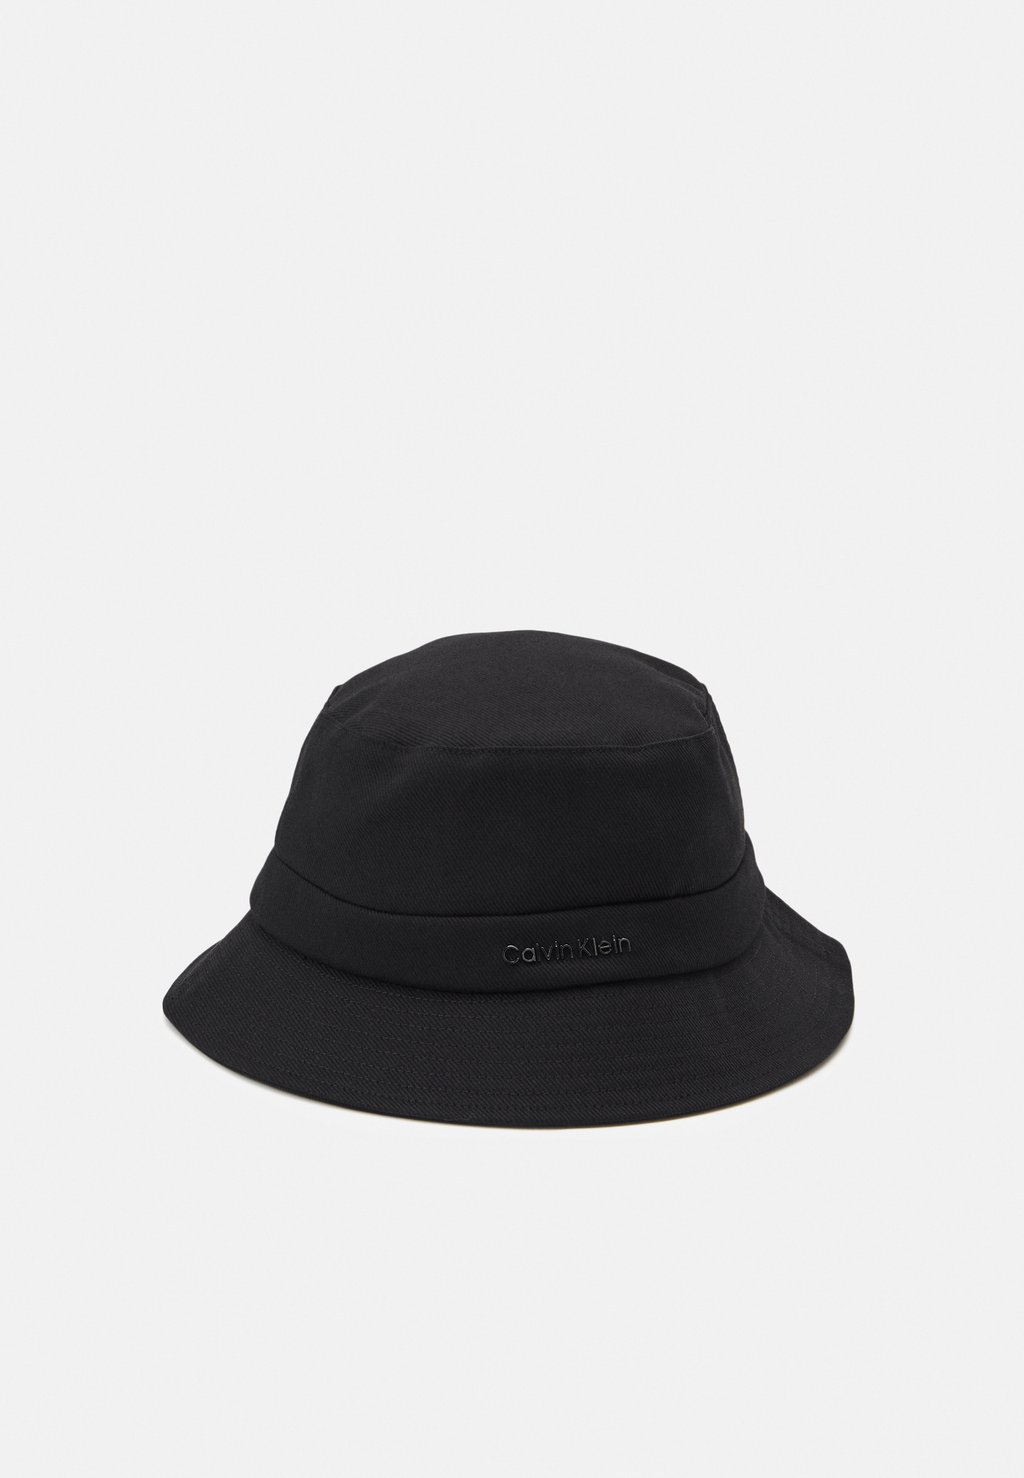 Панама LETTERING BUCKET Calvin Klein, цвет black панама logo bucket hat unisex calvin klein jeans цвет black